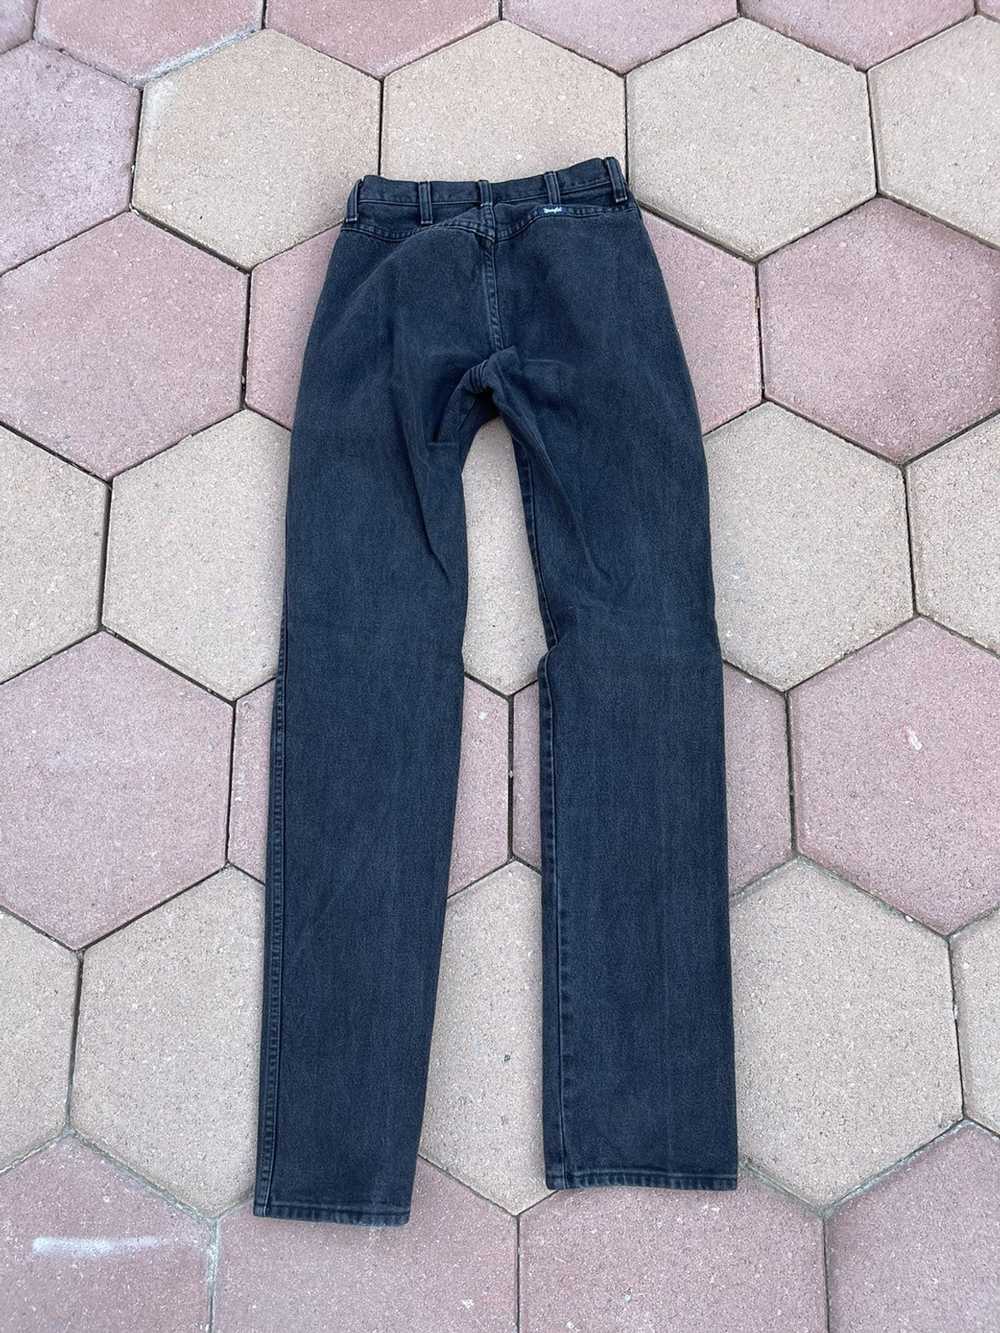 Vintage × Wrangler Vintage Wrangler Denim Jeans - image 4